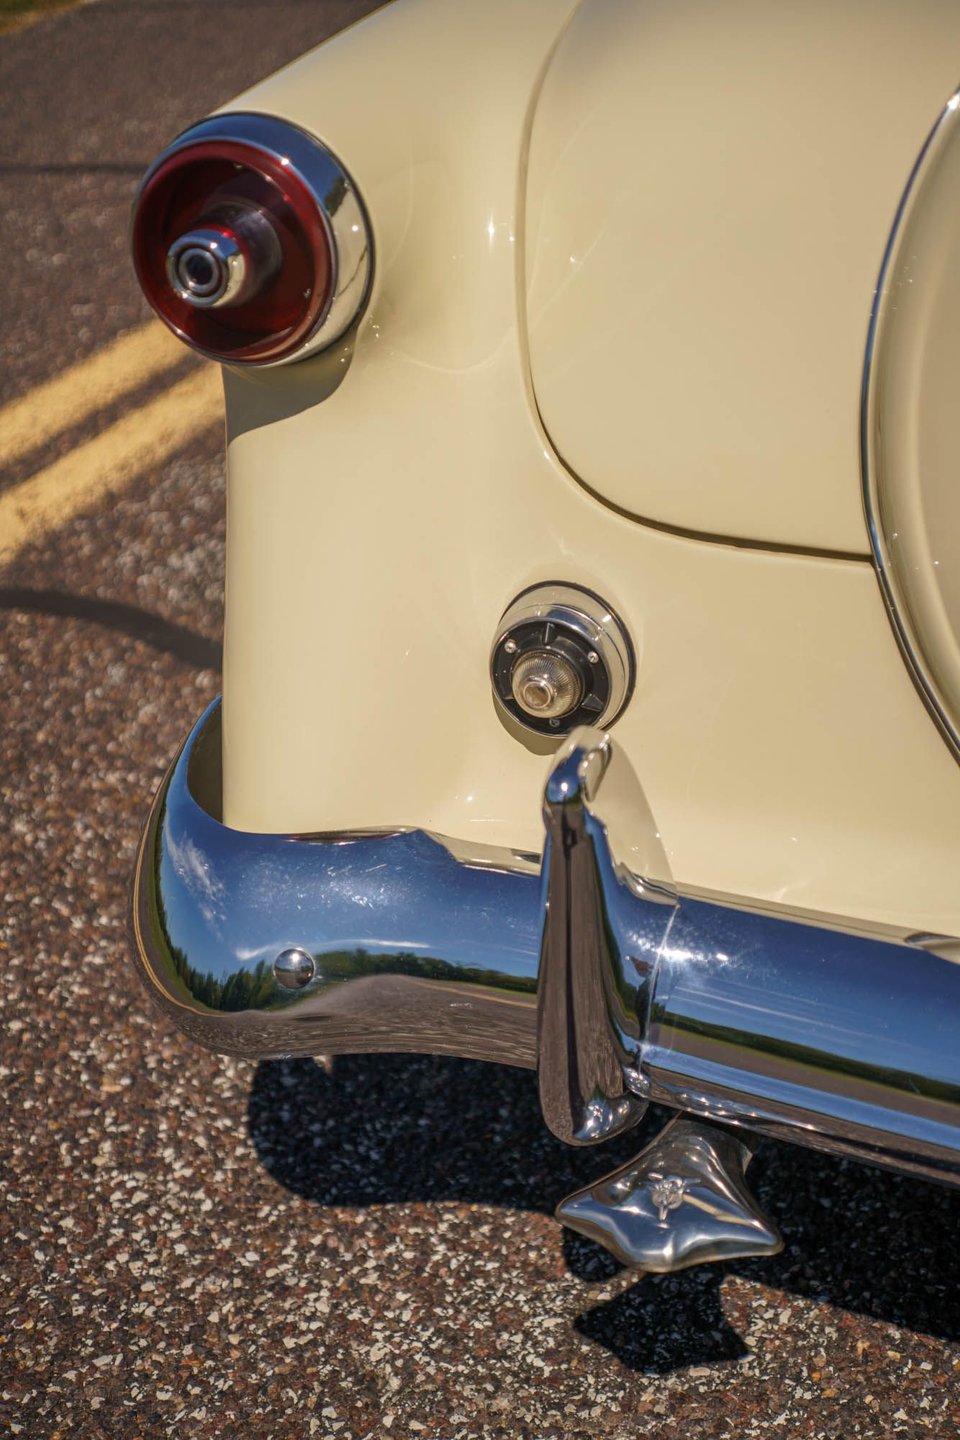 1953 ford crestliner 1953 ford crestline sunliner convertible